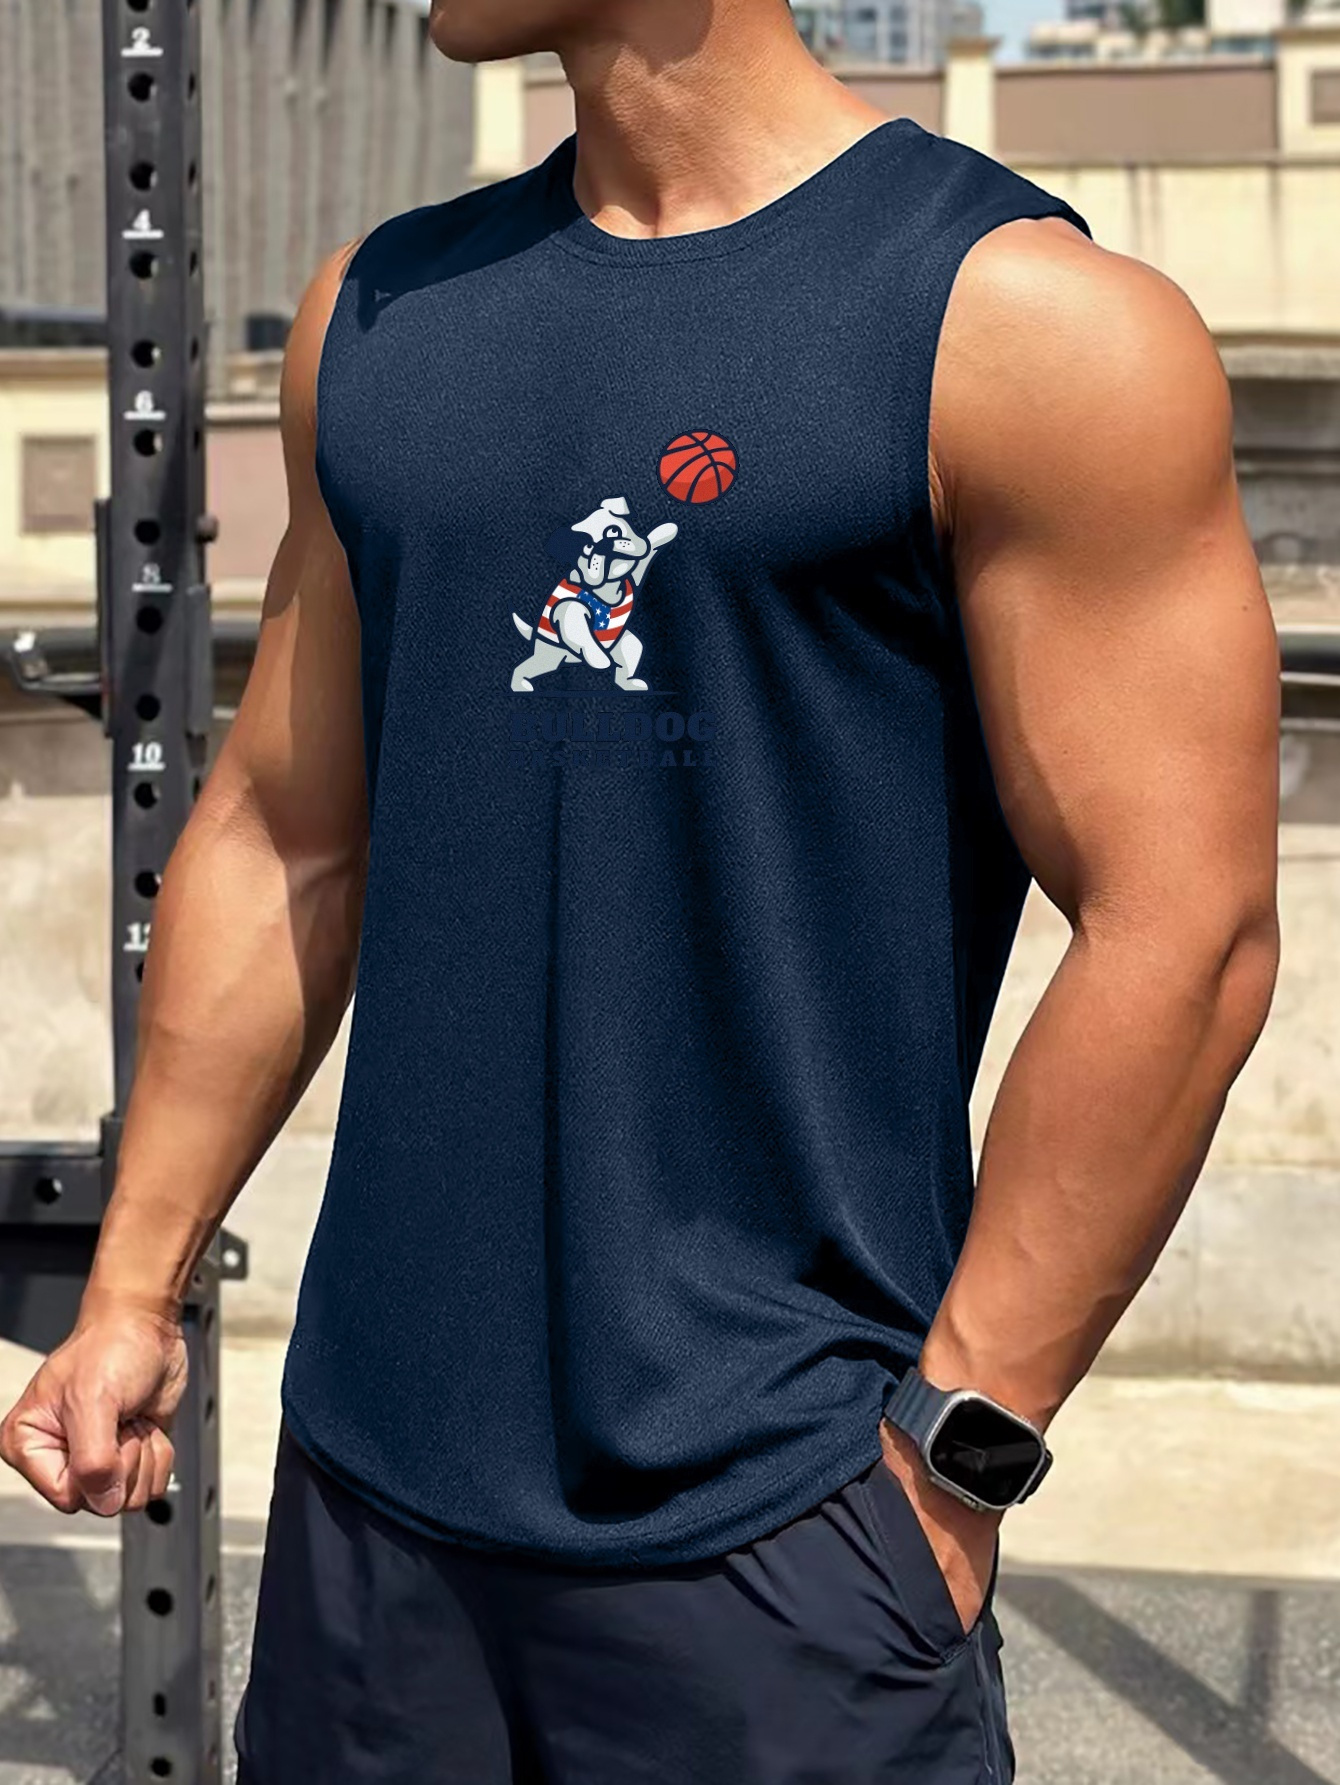 Camisetas para hombre/Bull Fitness Gym camisas